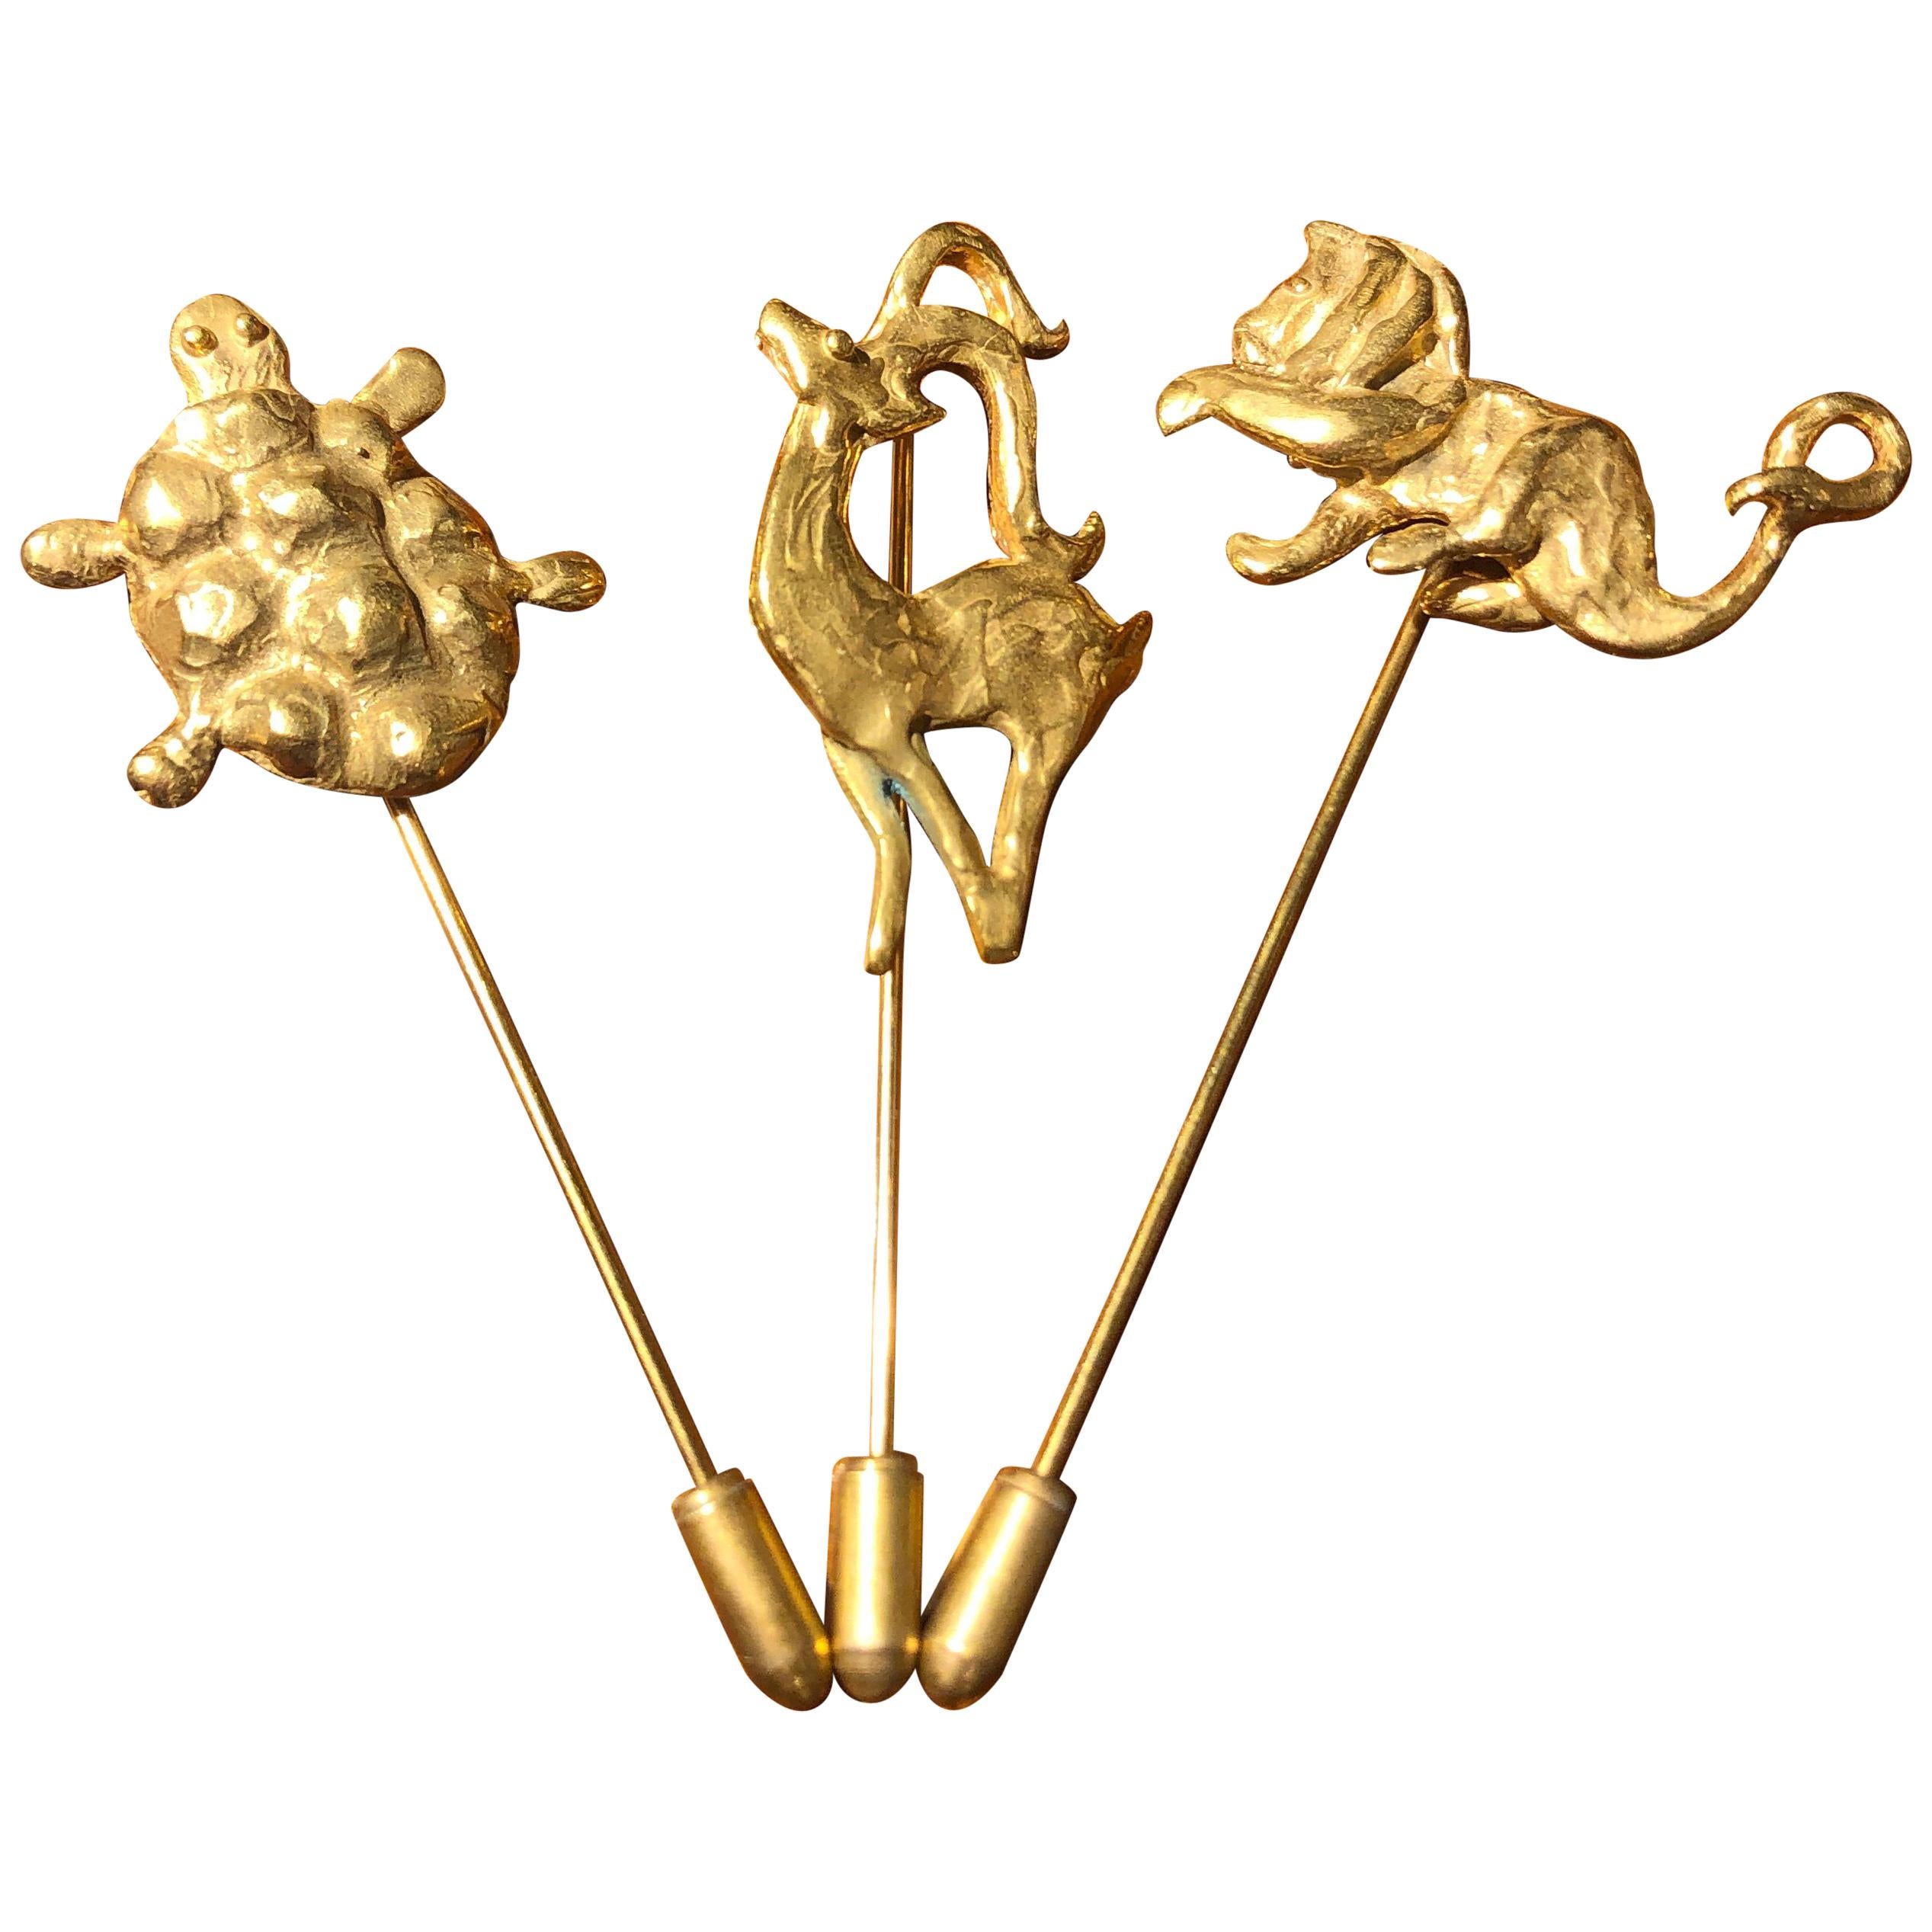 Broschen „Animal“ aus vergoldeter Bronze von Franck Evennou, Frankreich, 2018